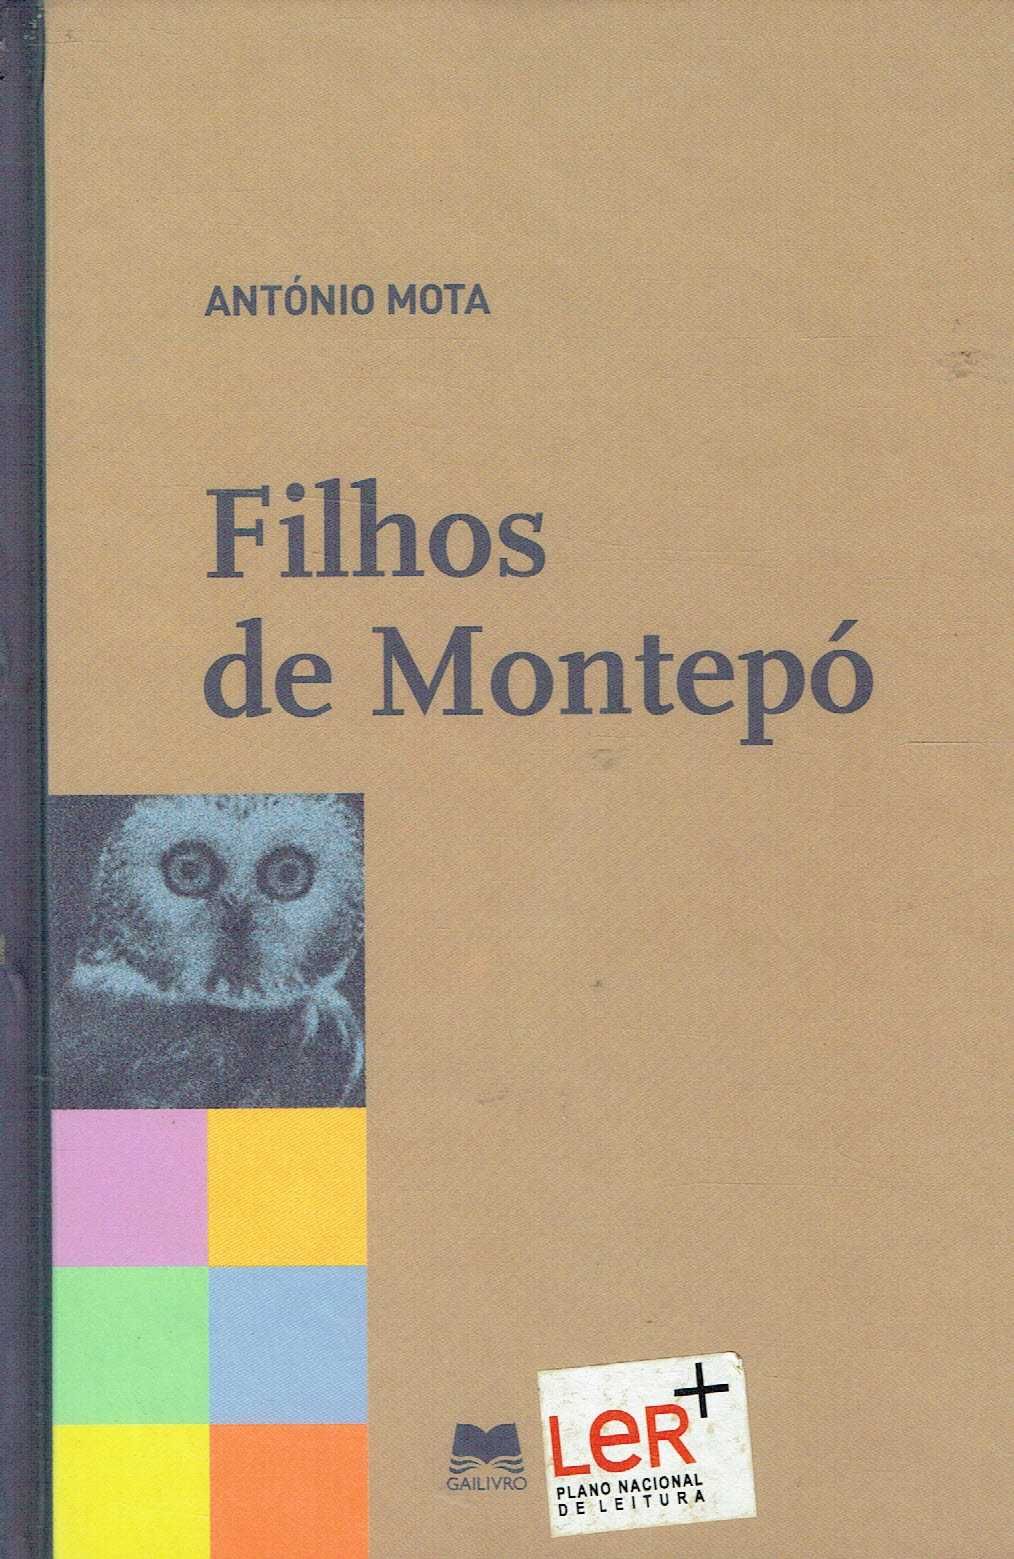 7306

Filhos de Montepó
de António Mota